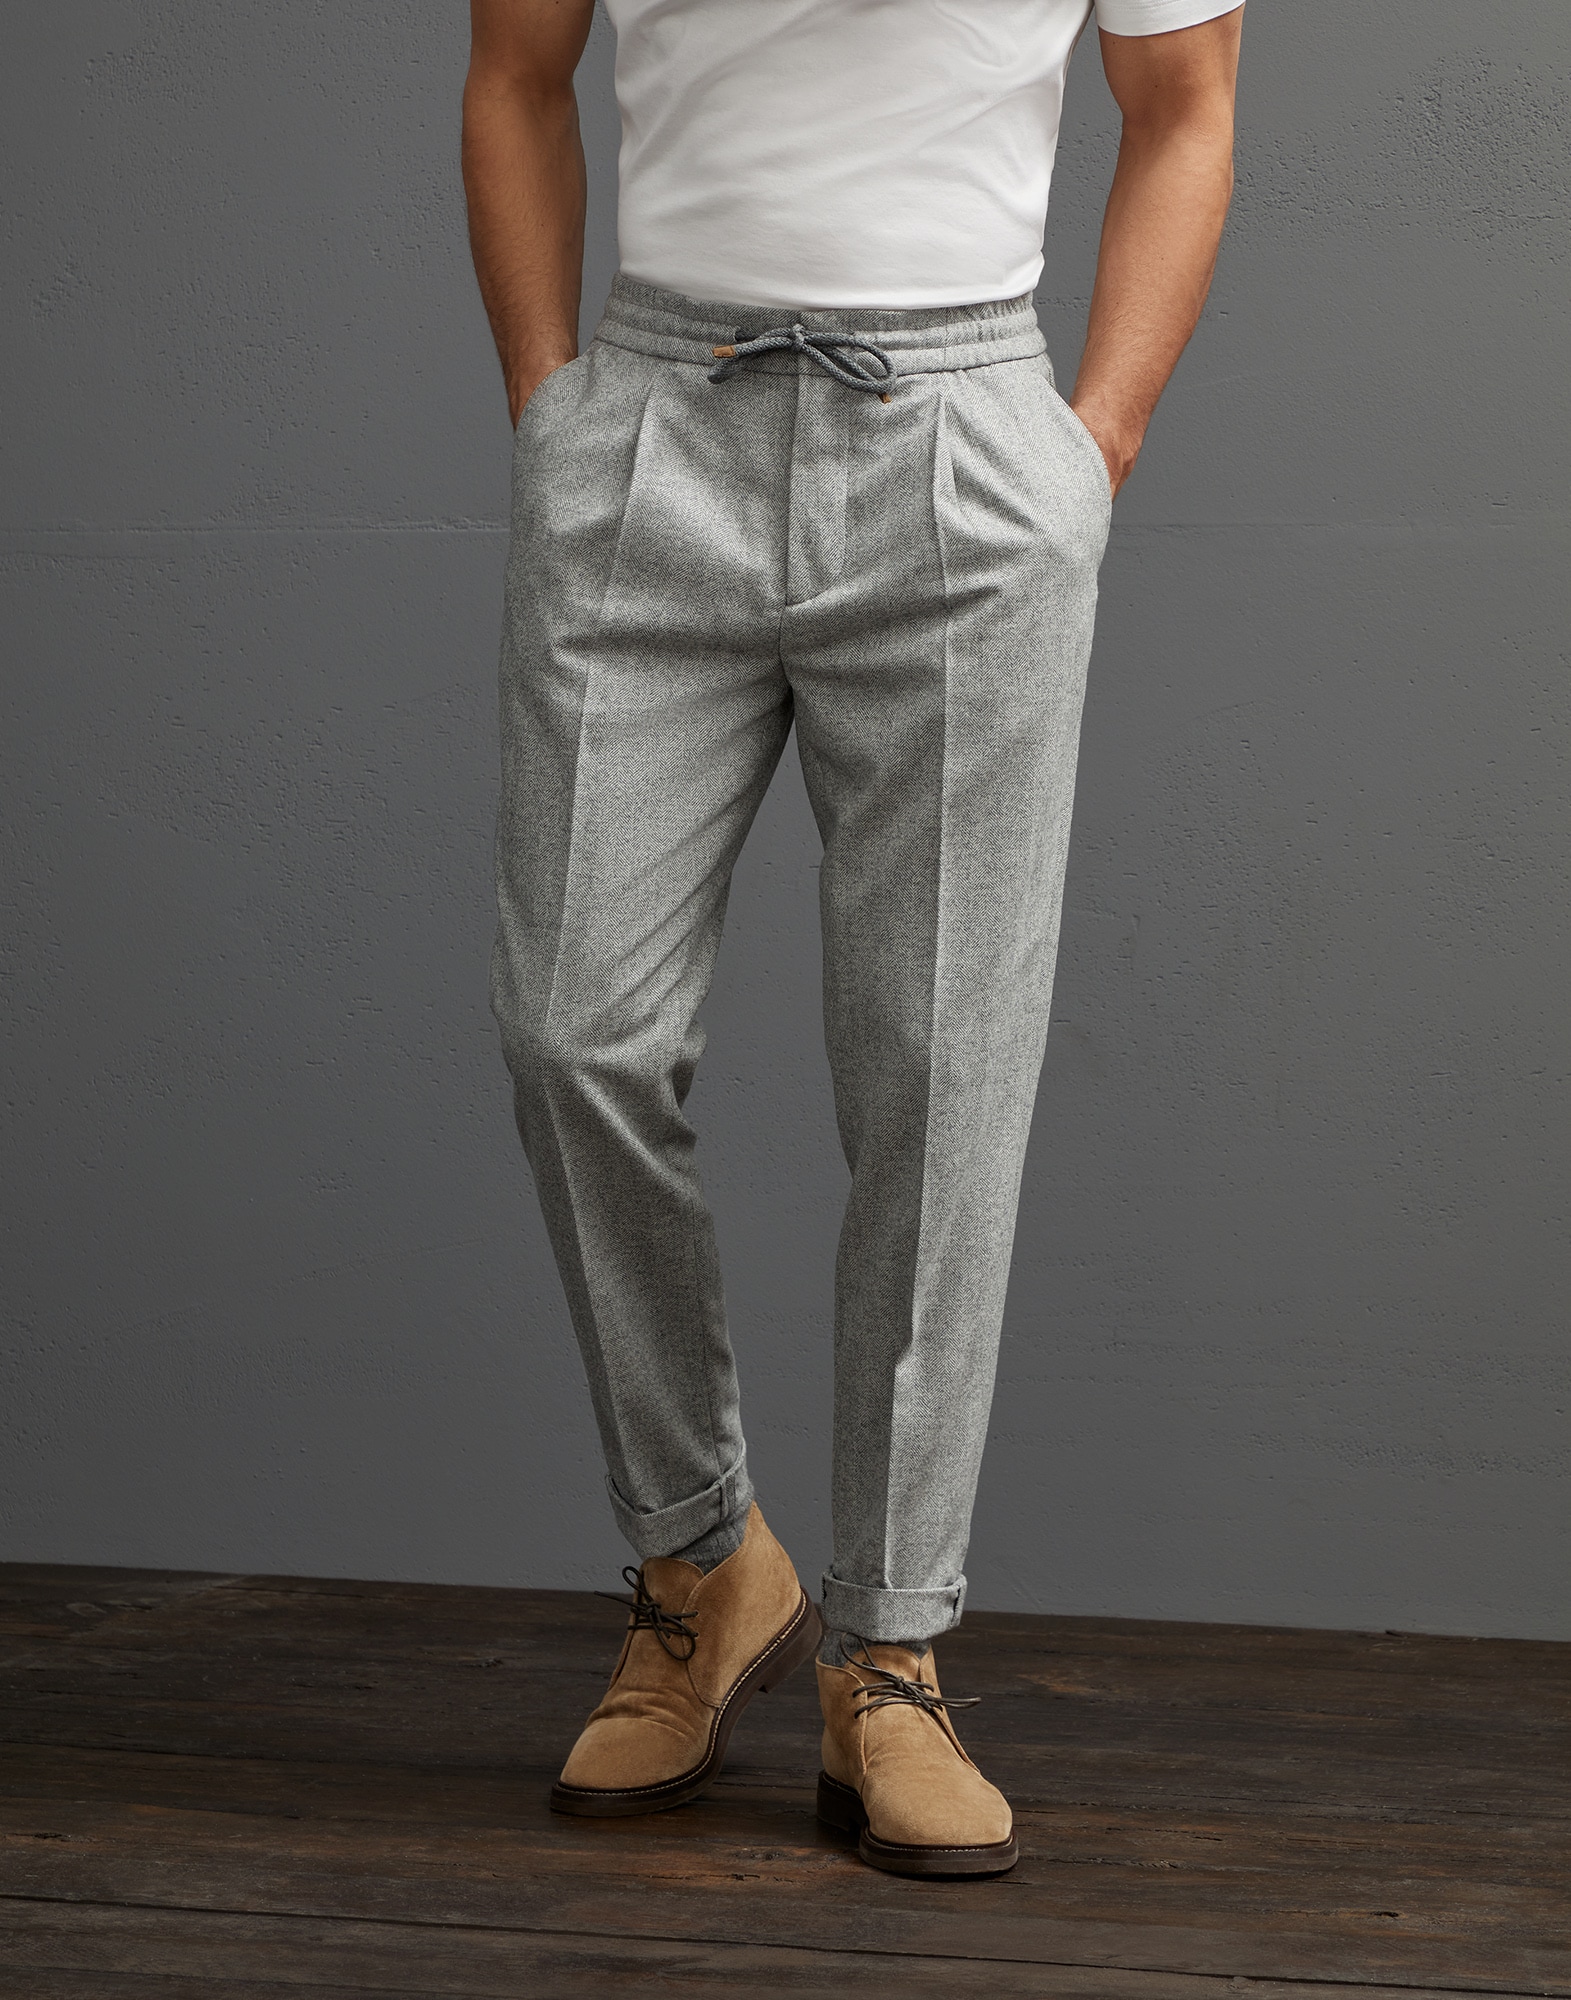 Brunello Cucinelli Cotton Trouser in Cocoa Mens Trousers Slacks and Chinos Brunello Cucinelli Trousers for Men Slacks and Chinos Grey 